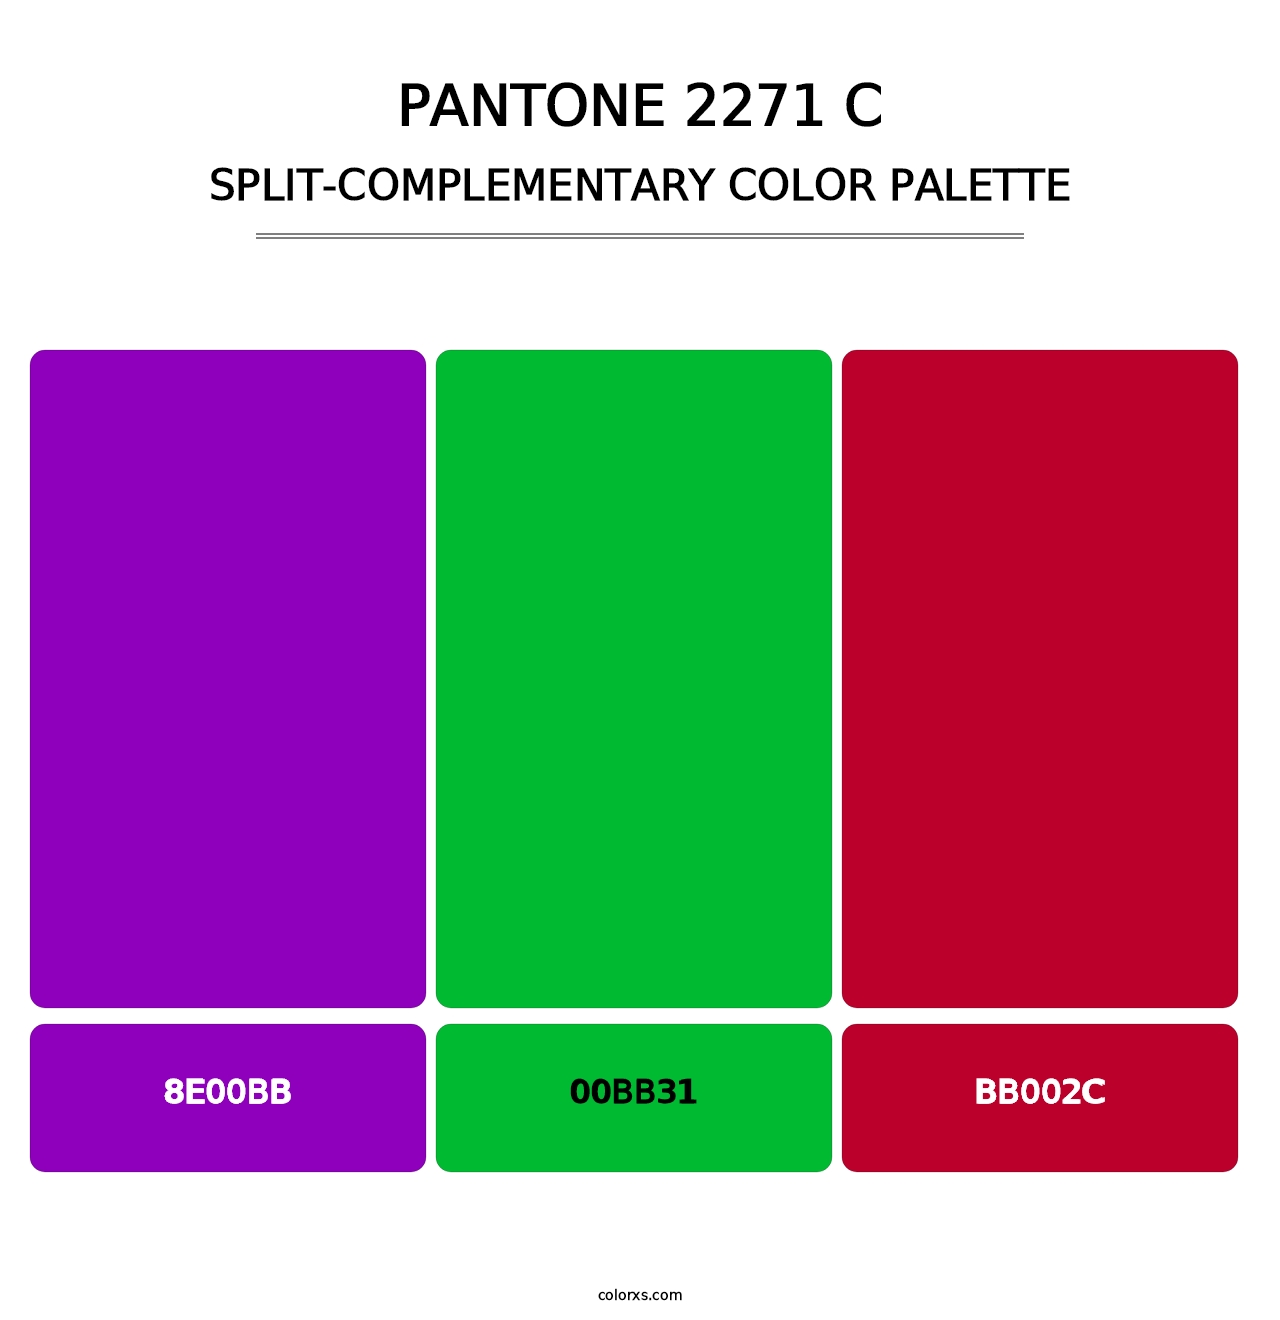 PANTONE 2271 C - Split-Complementary Color Palette